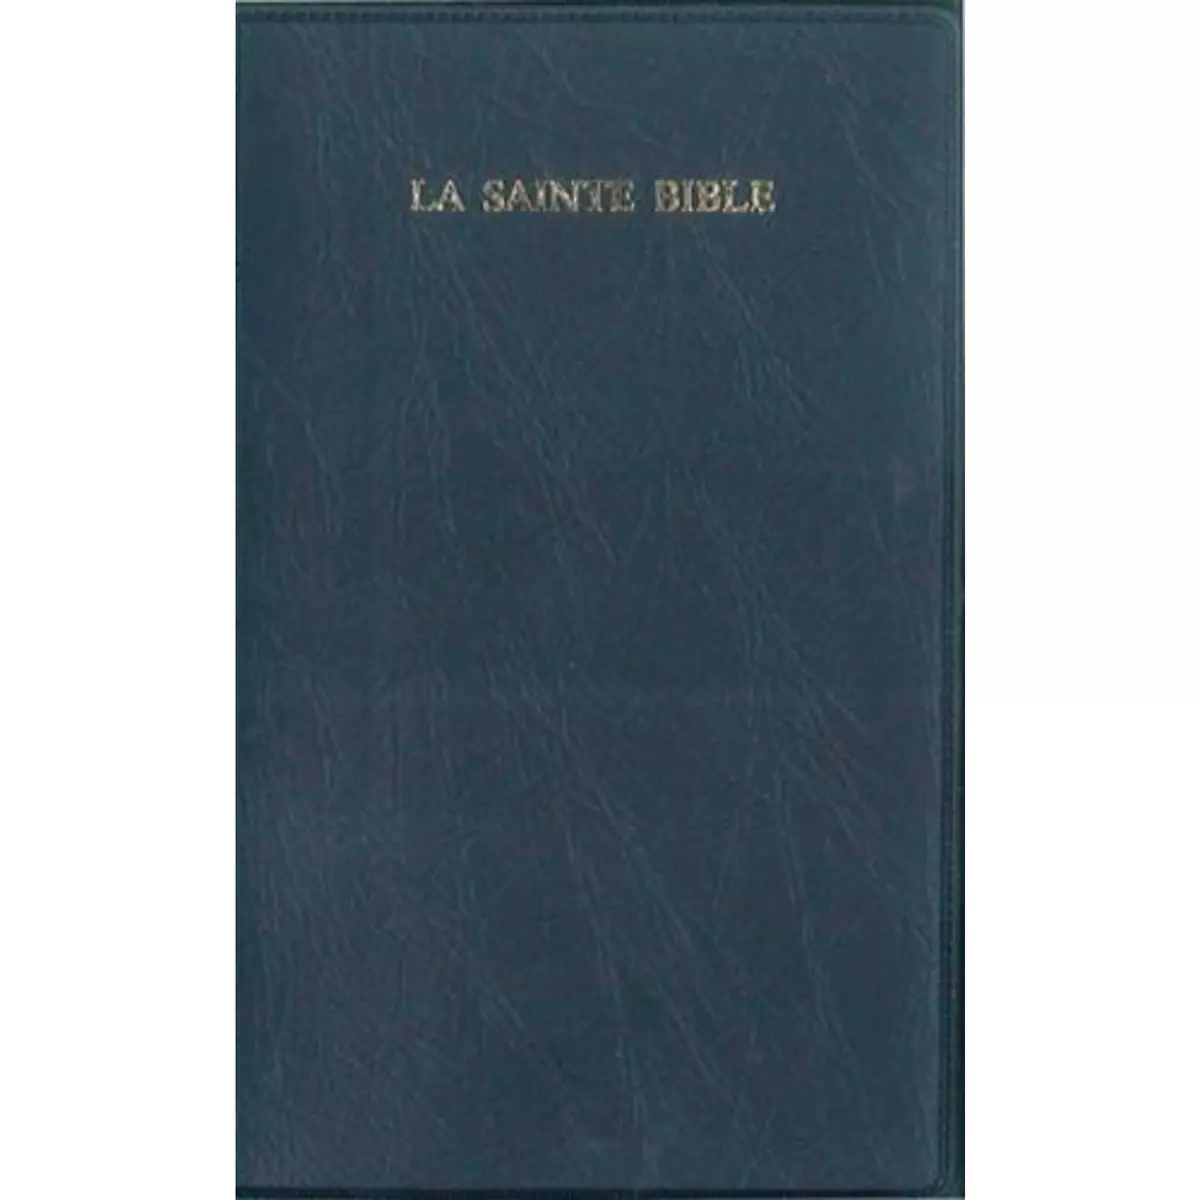  LA SAINTE BIBLE, Segond Louis